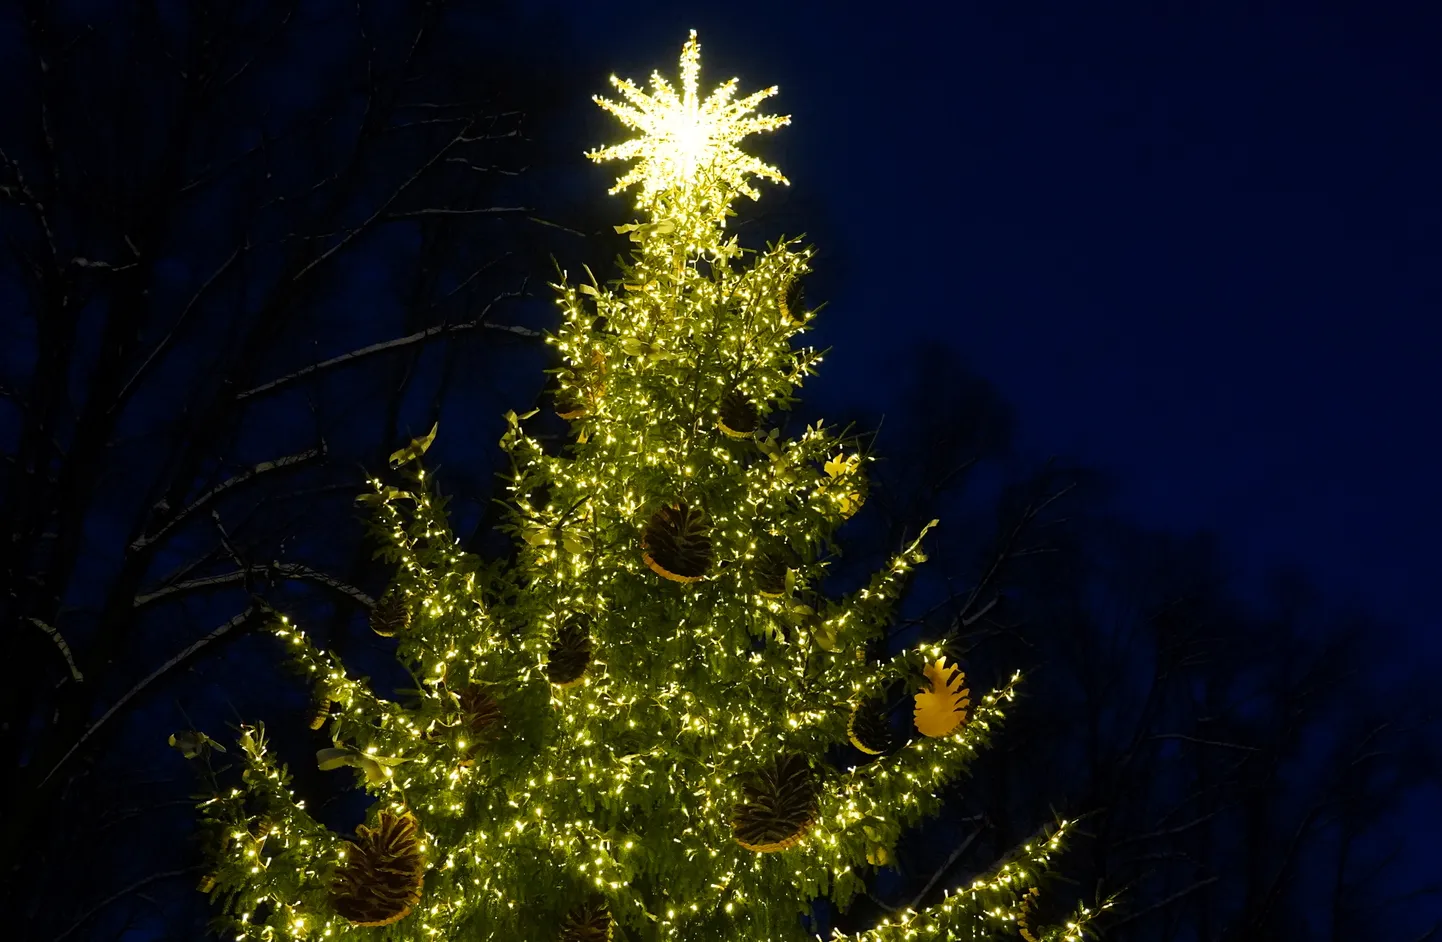 Norisinās Ziemassvētku pasākums, kurā Valsts prezidents tiekas ar daudzbērnu ģimenēm no dažādiem Latvijas novadiem un pilsētām, lai kopīgi iedegtu svētku egli.